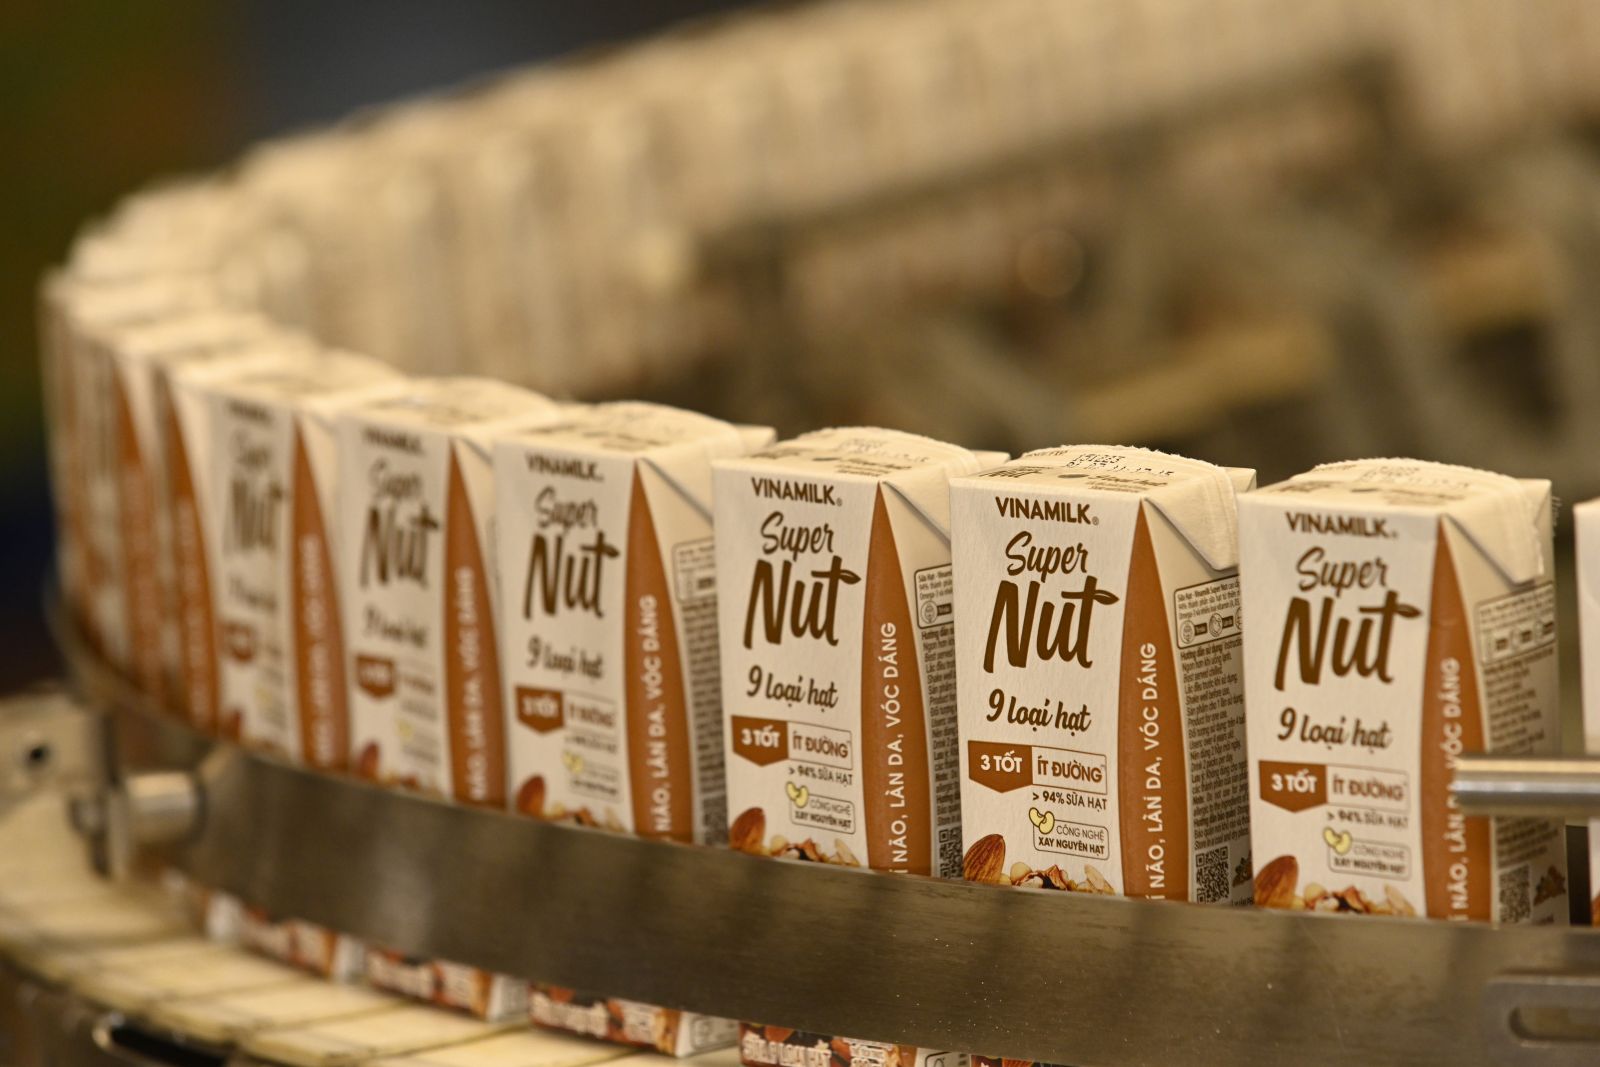 Tuy mới ra mắt nhưng “tân binh” Sữa 9 loại hạt Super Nut của Vinamilk đang nhận được sự yêu thích lớn của người tiêu dùng về cả vị ngon lẫn chất lượng.